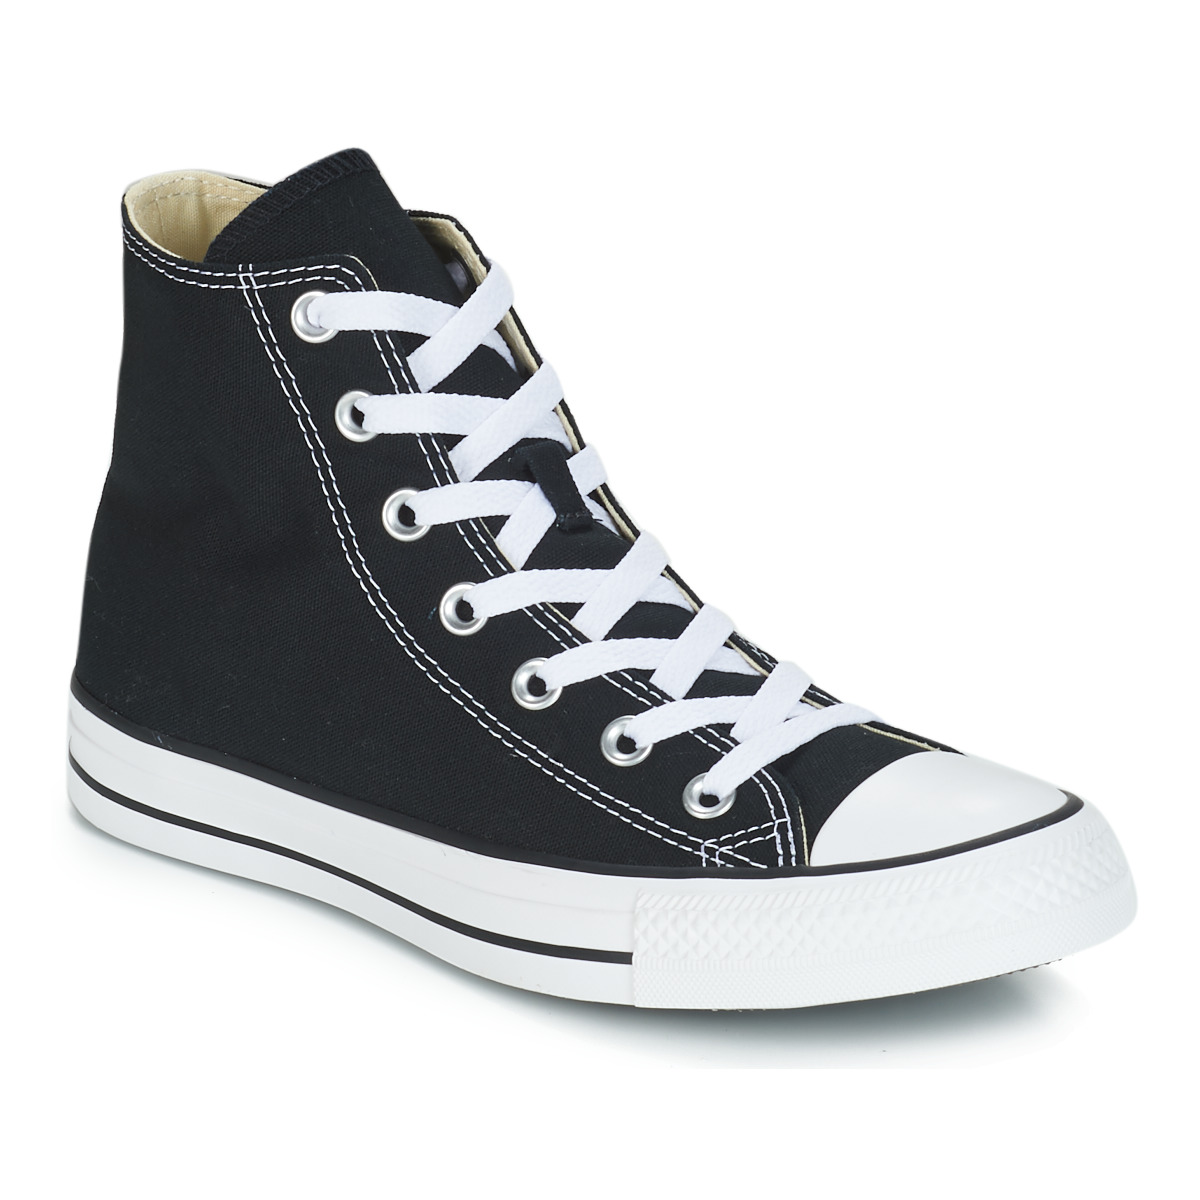 Aantrekkelijk zijn aantrekkelijk Lauw waterstof Converse CHUCK TAYLOR ALL STAR CORE HI Black - Free delivery | Spartoo NET  ! - Shoes High top trainers USD/$83.00